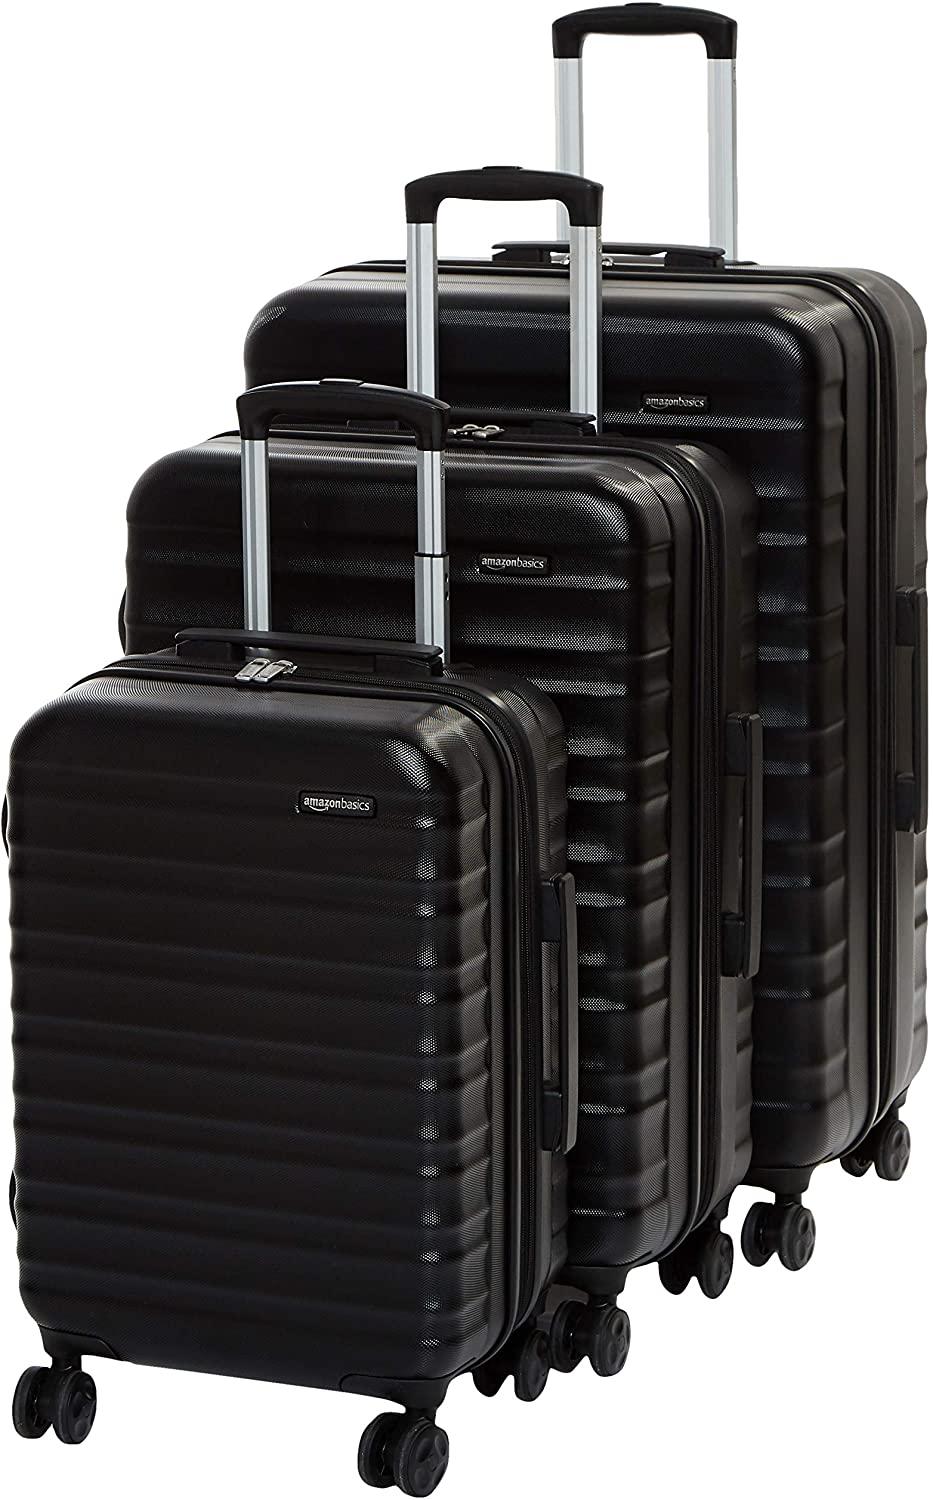 AmazonBasics Wheeled Hard Shell Luggage Set, 3-Piece